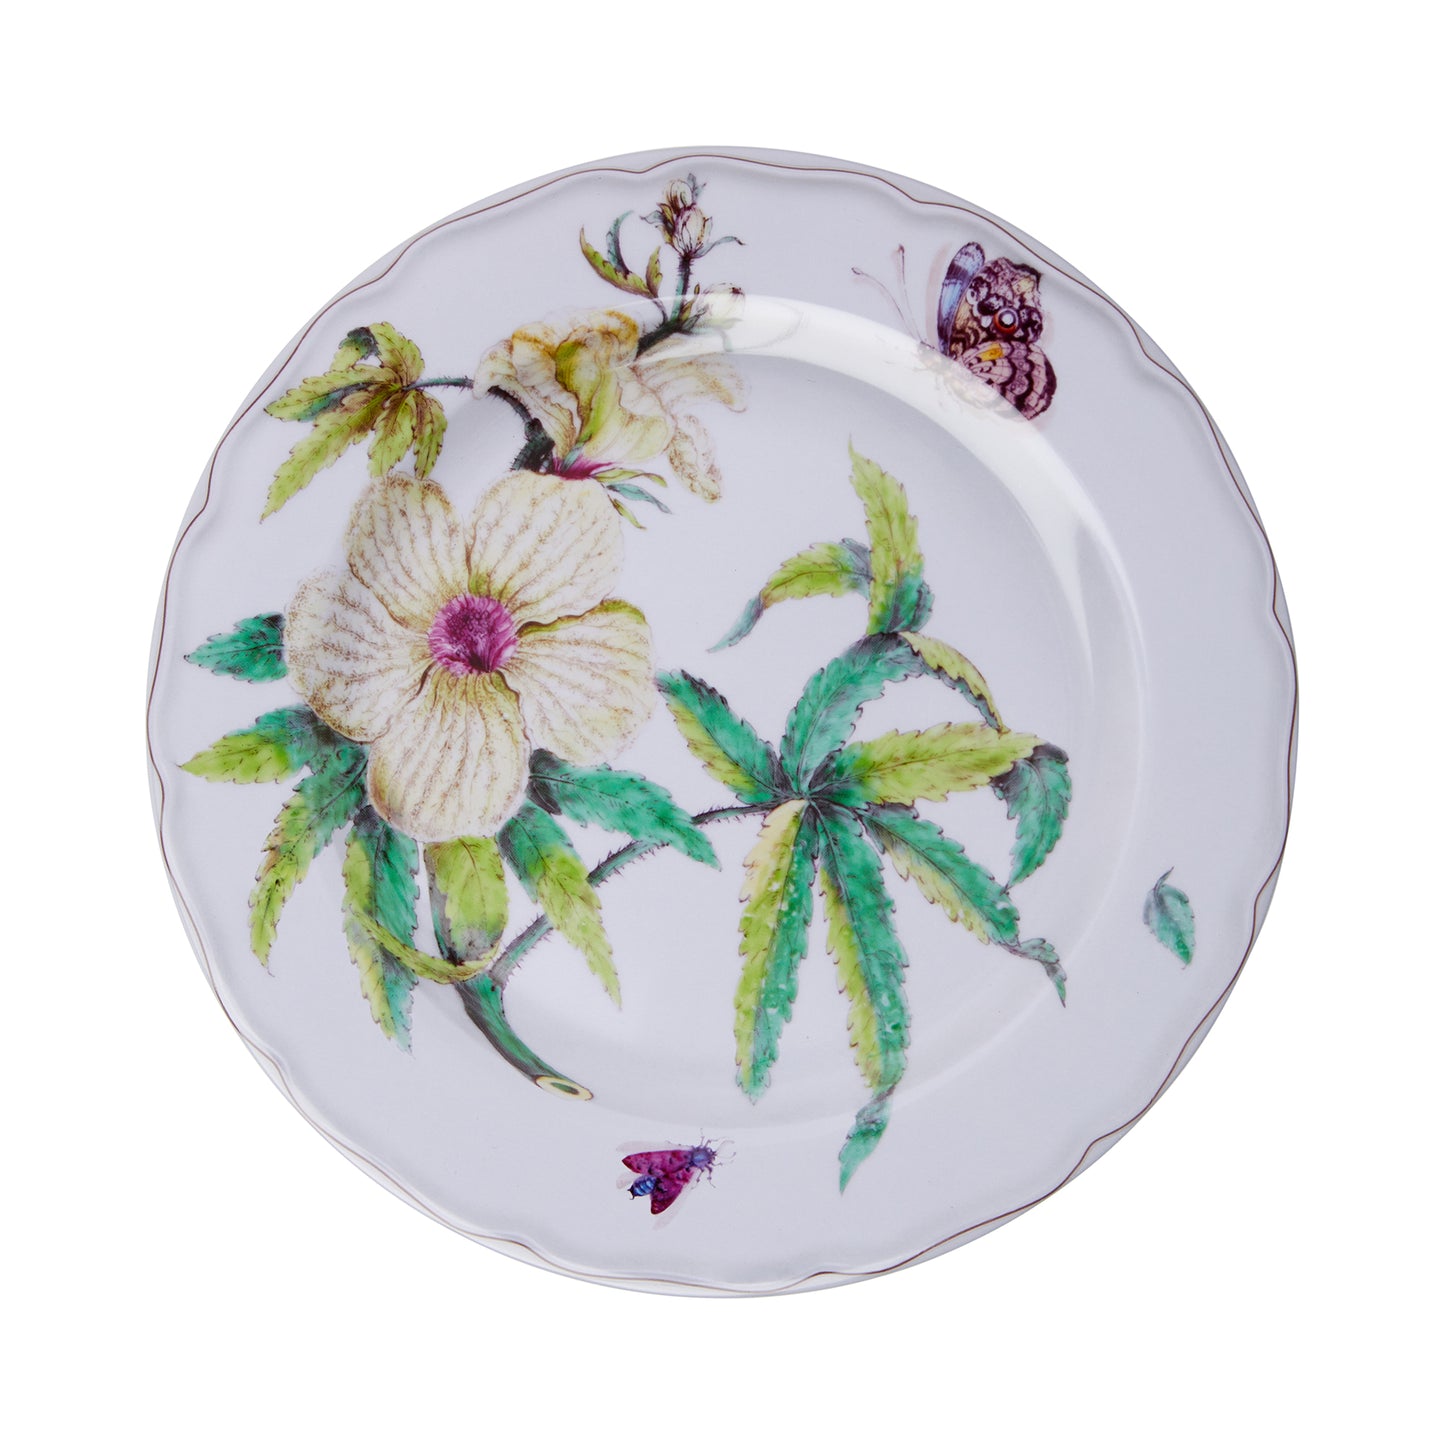 Botanical Dessert - Tin plate